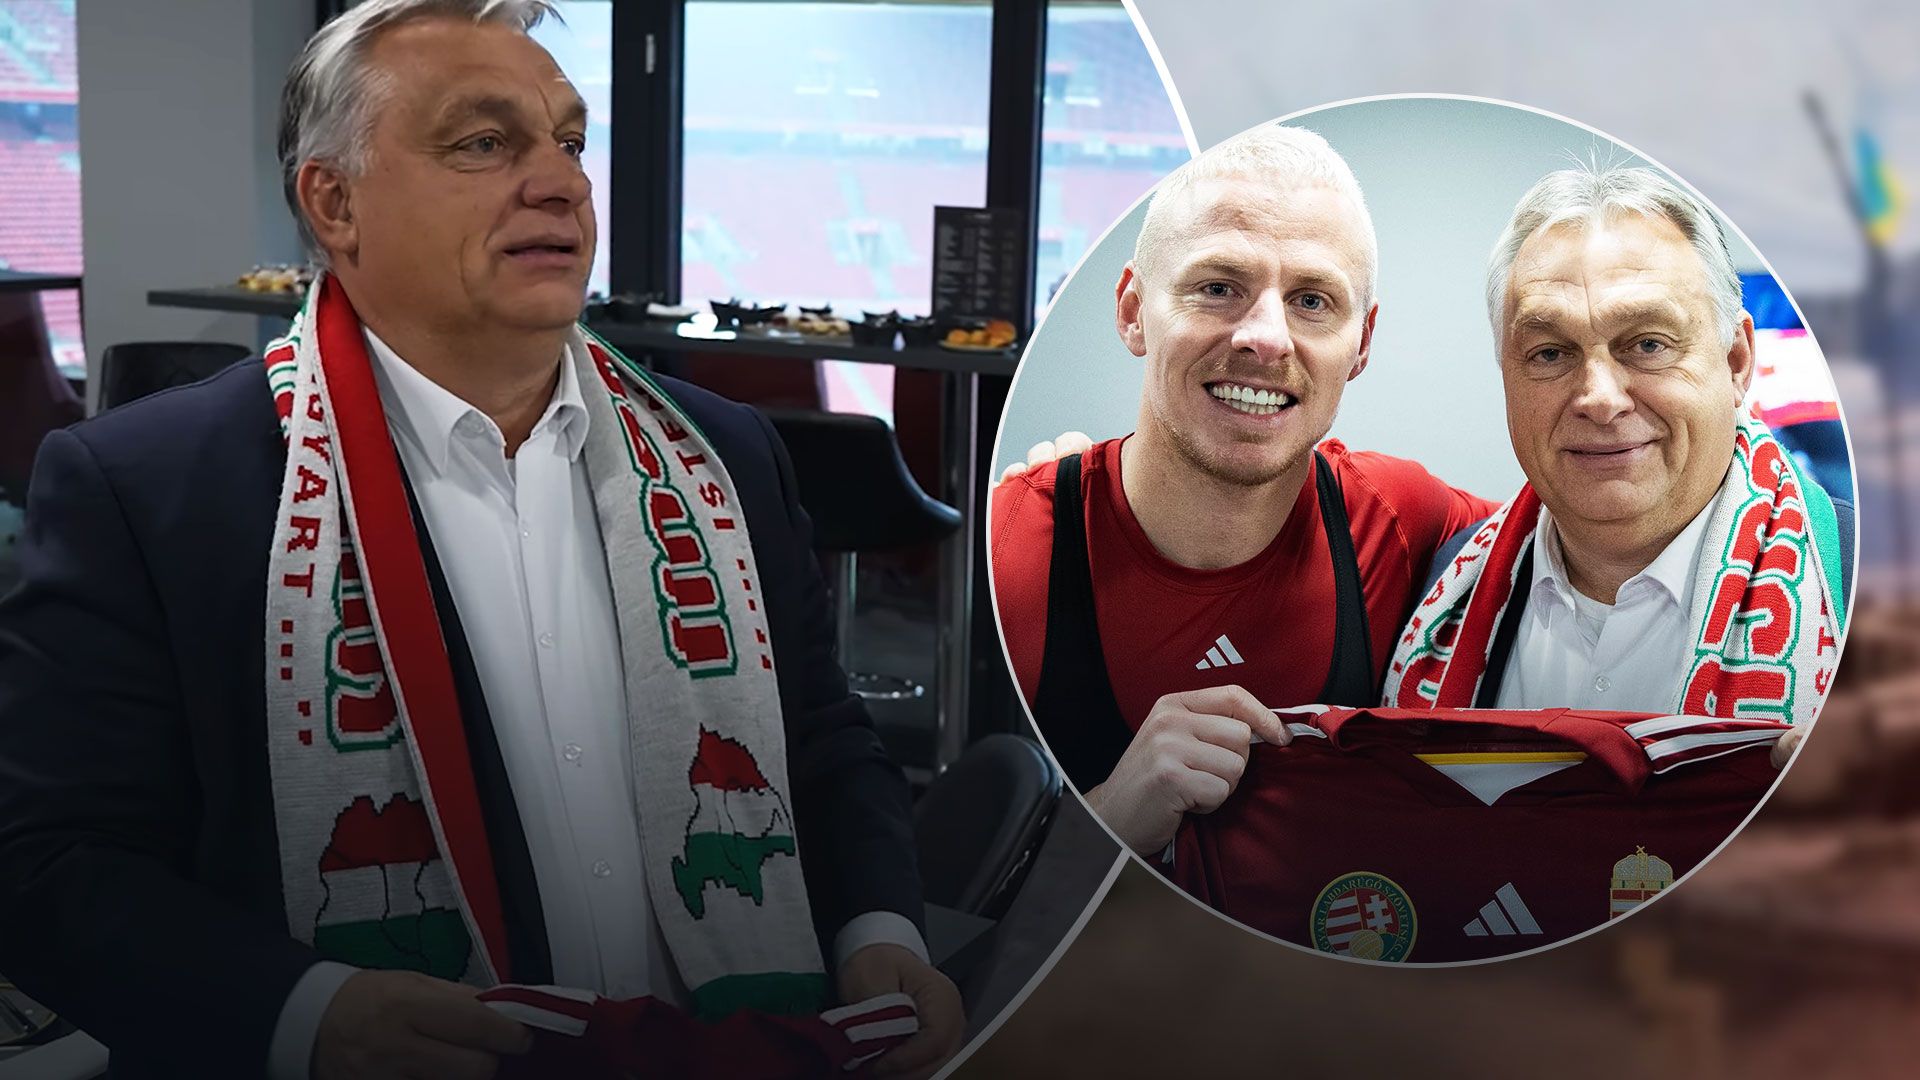 Виктор Орбан попал в скандал из-за футбольного шарфа - 24 Канал